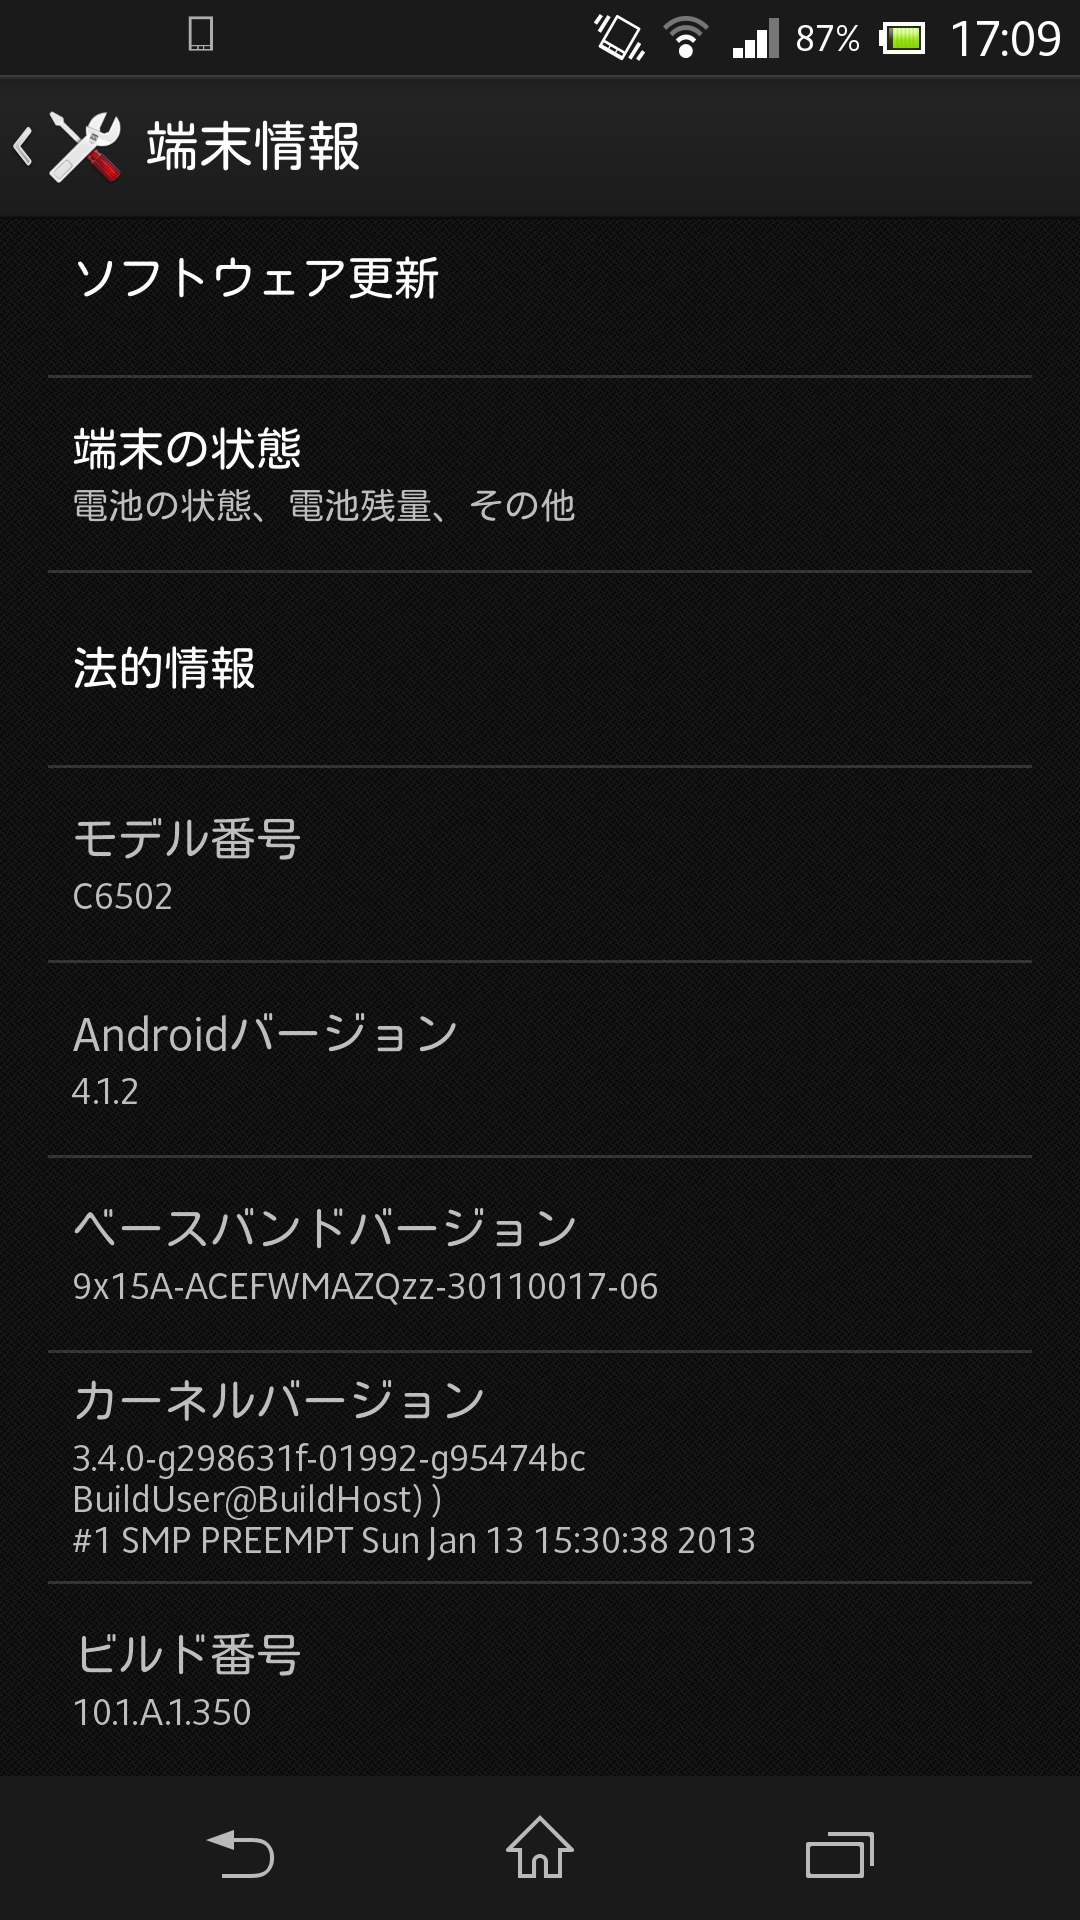 【コラム】Xperia Zの派生モデルXperia ZLレビュー(ソフトウェア編)